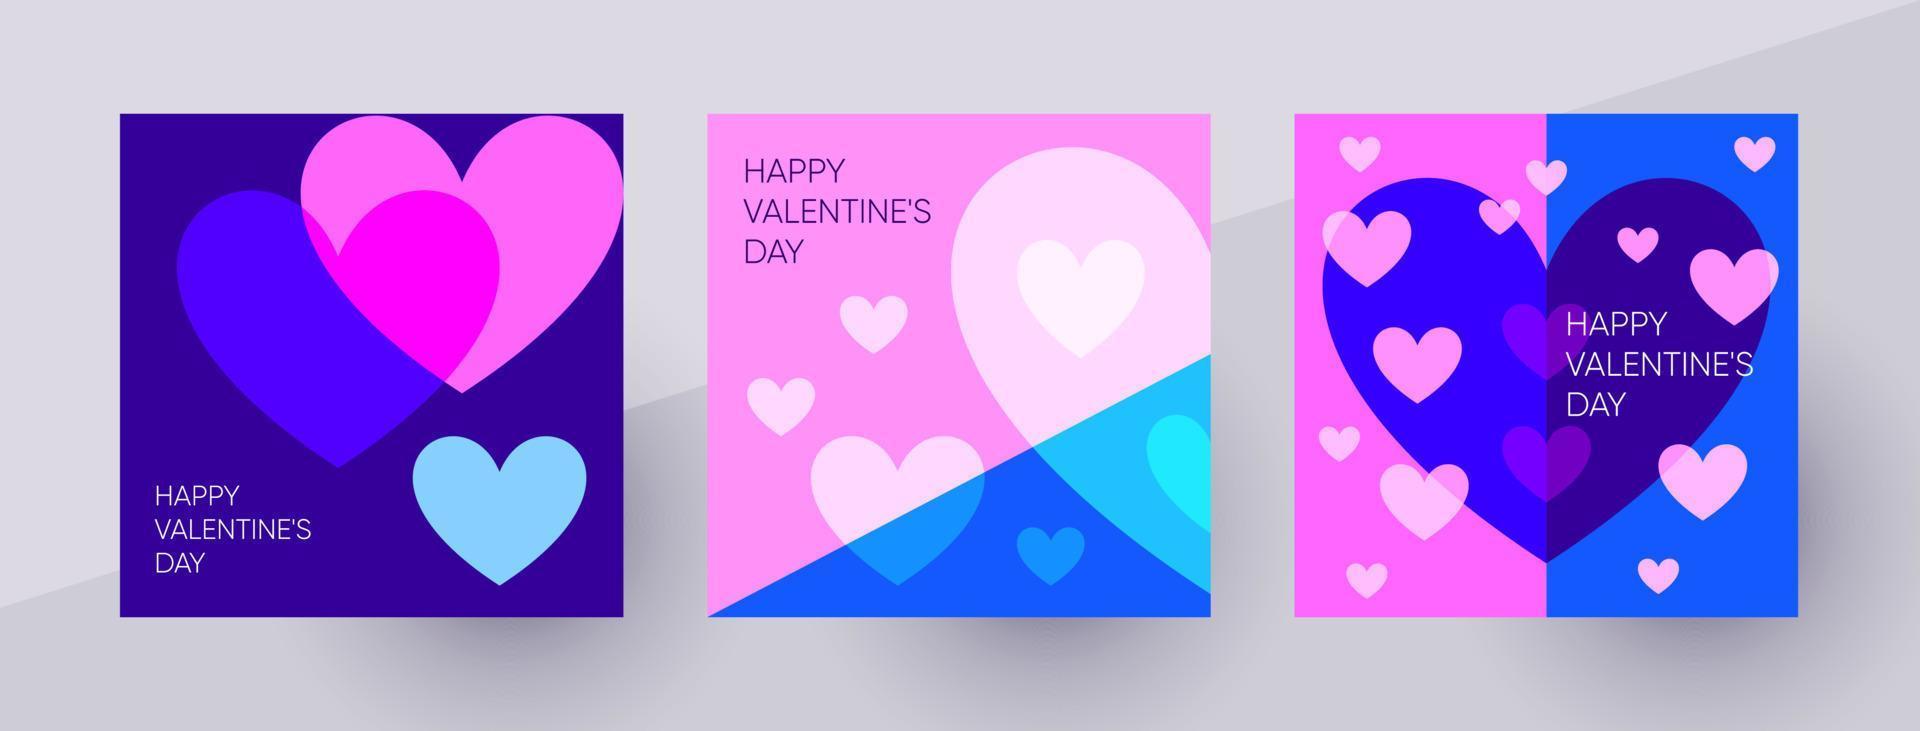 modelos de postagem de feliz dia dos namorados para mídias sociais. ilustração vetorial vívida colorida com símbolos de corações. vetor